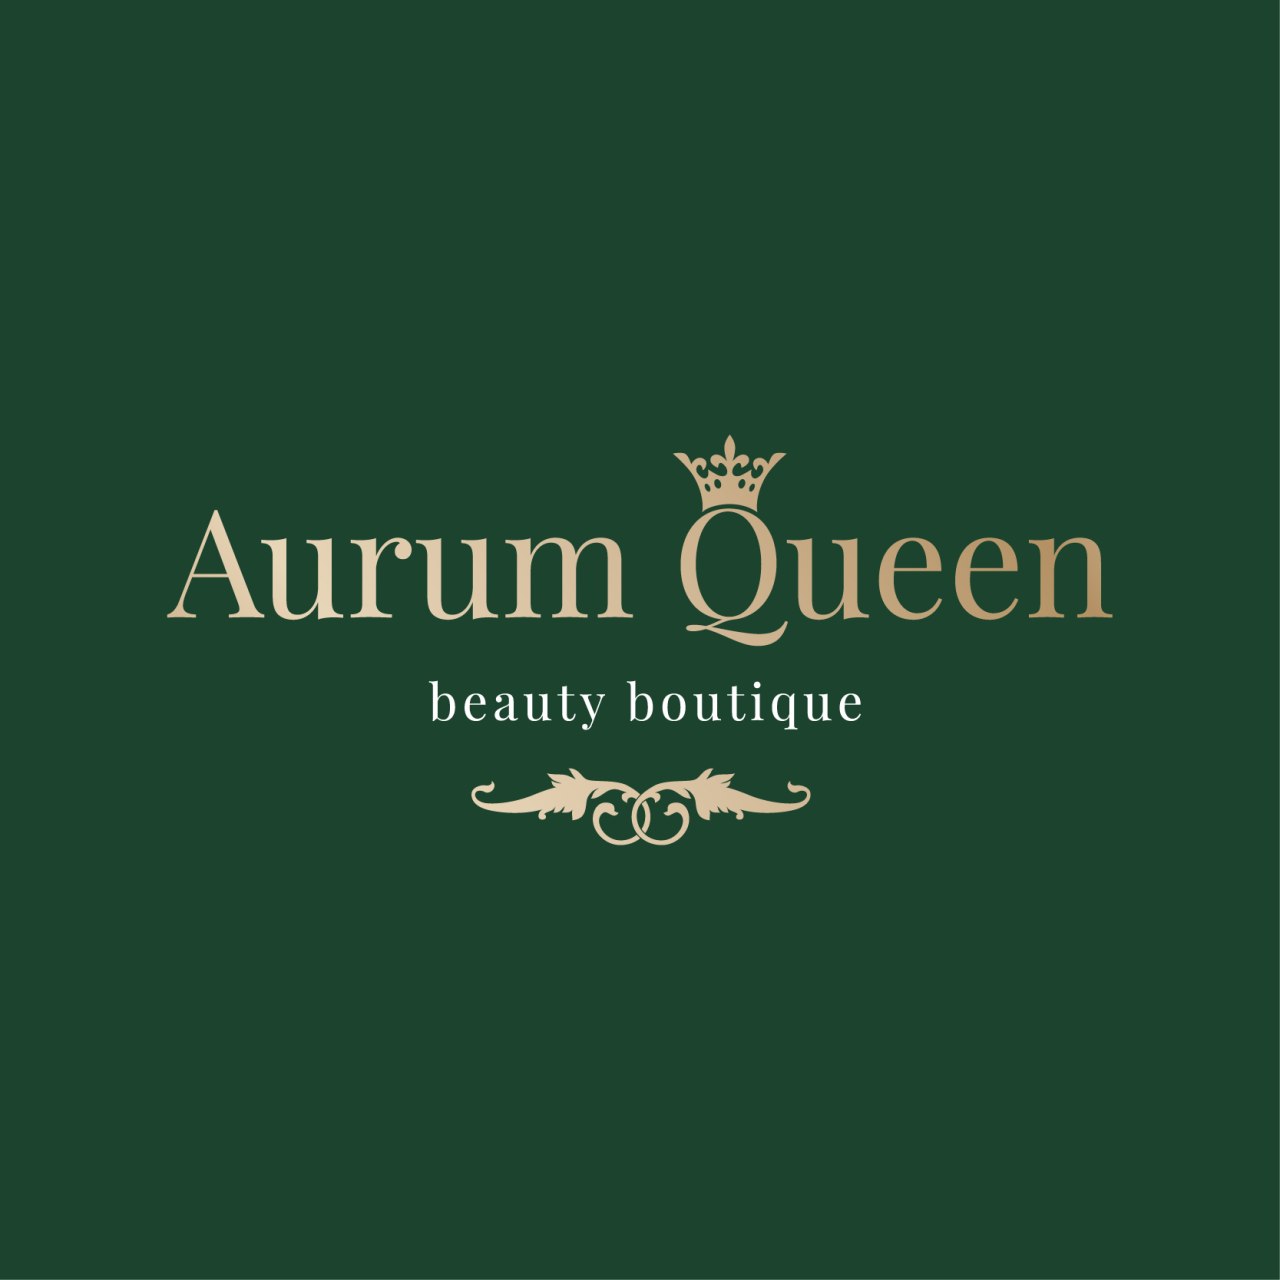 Aurum Queen Логотип(logo)